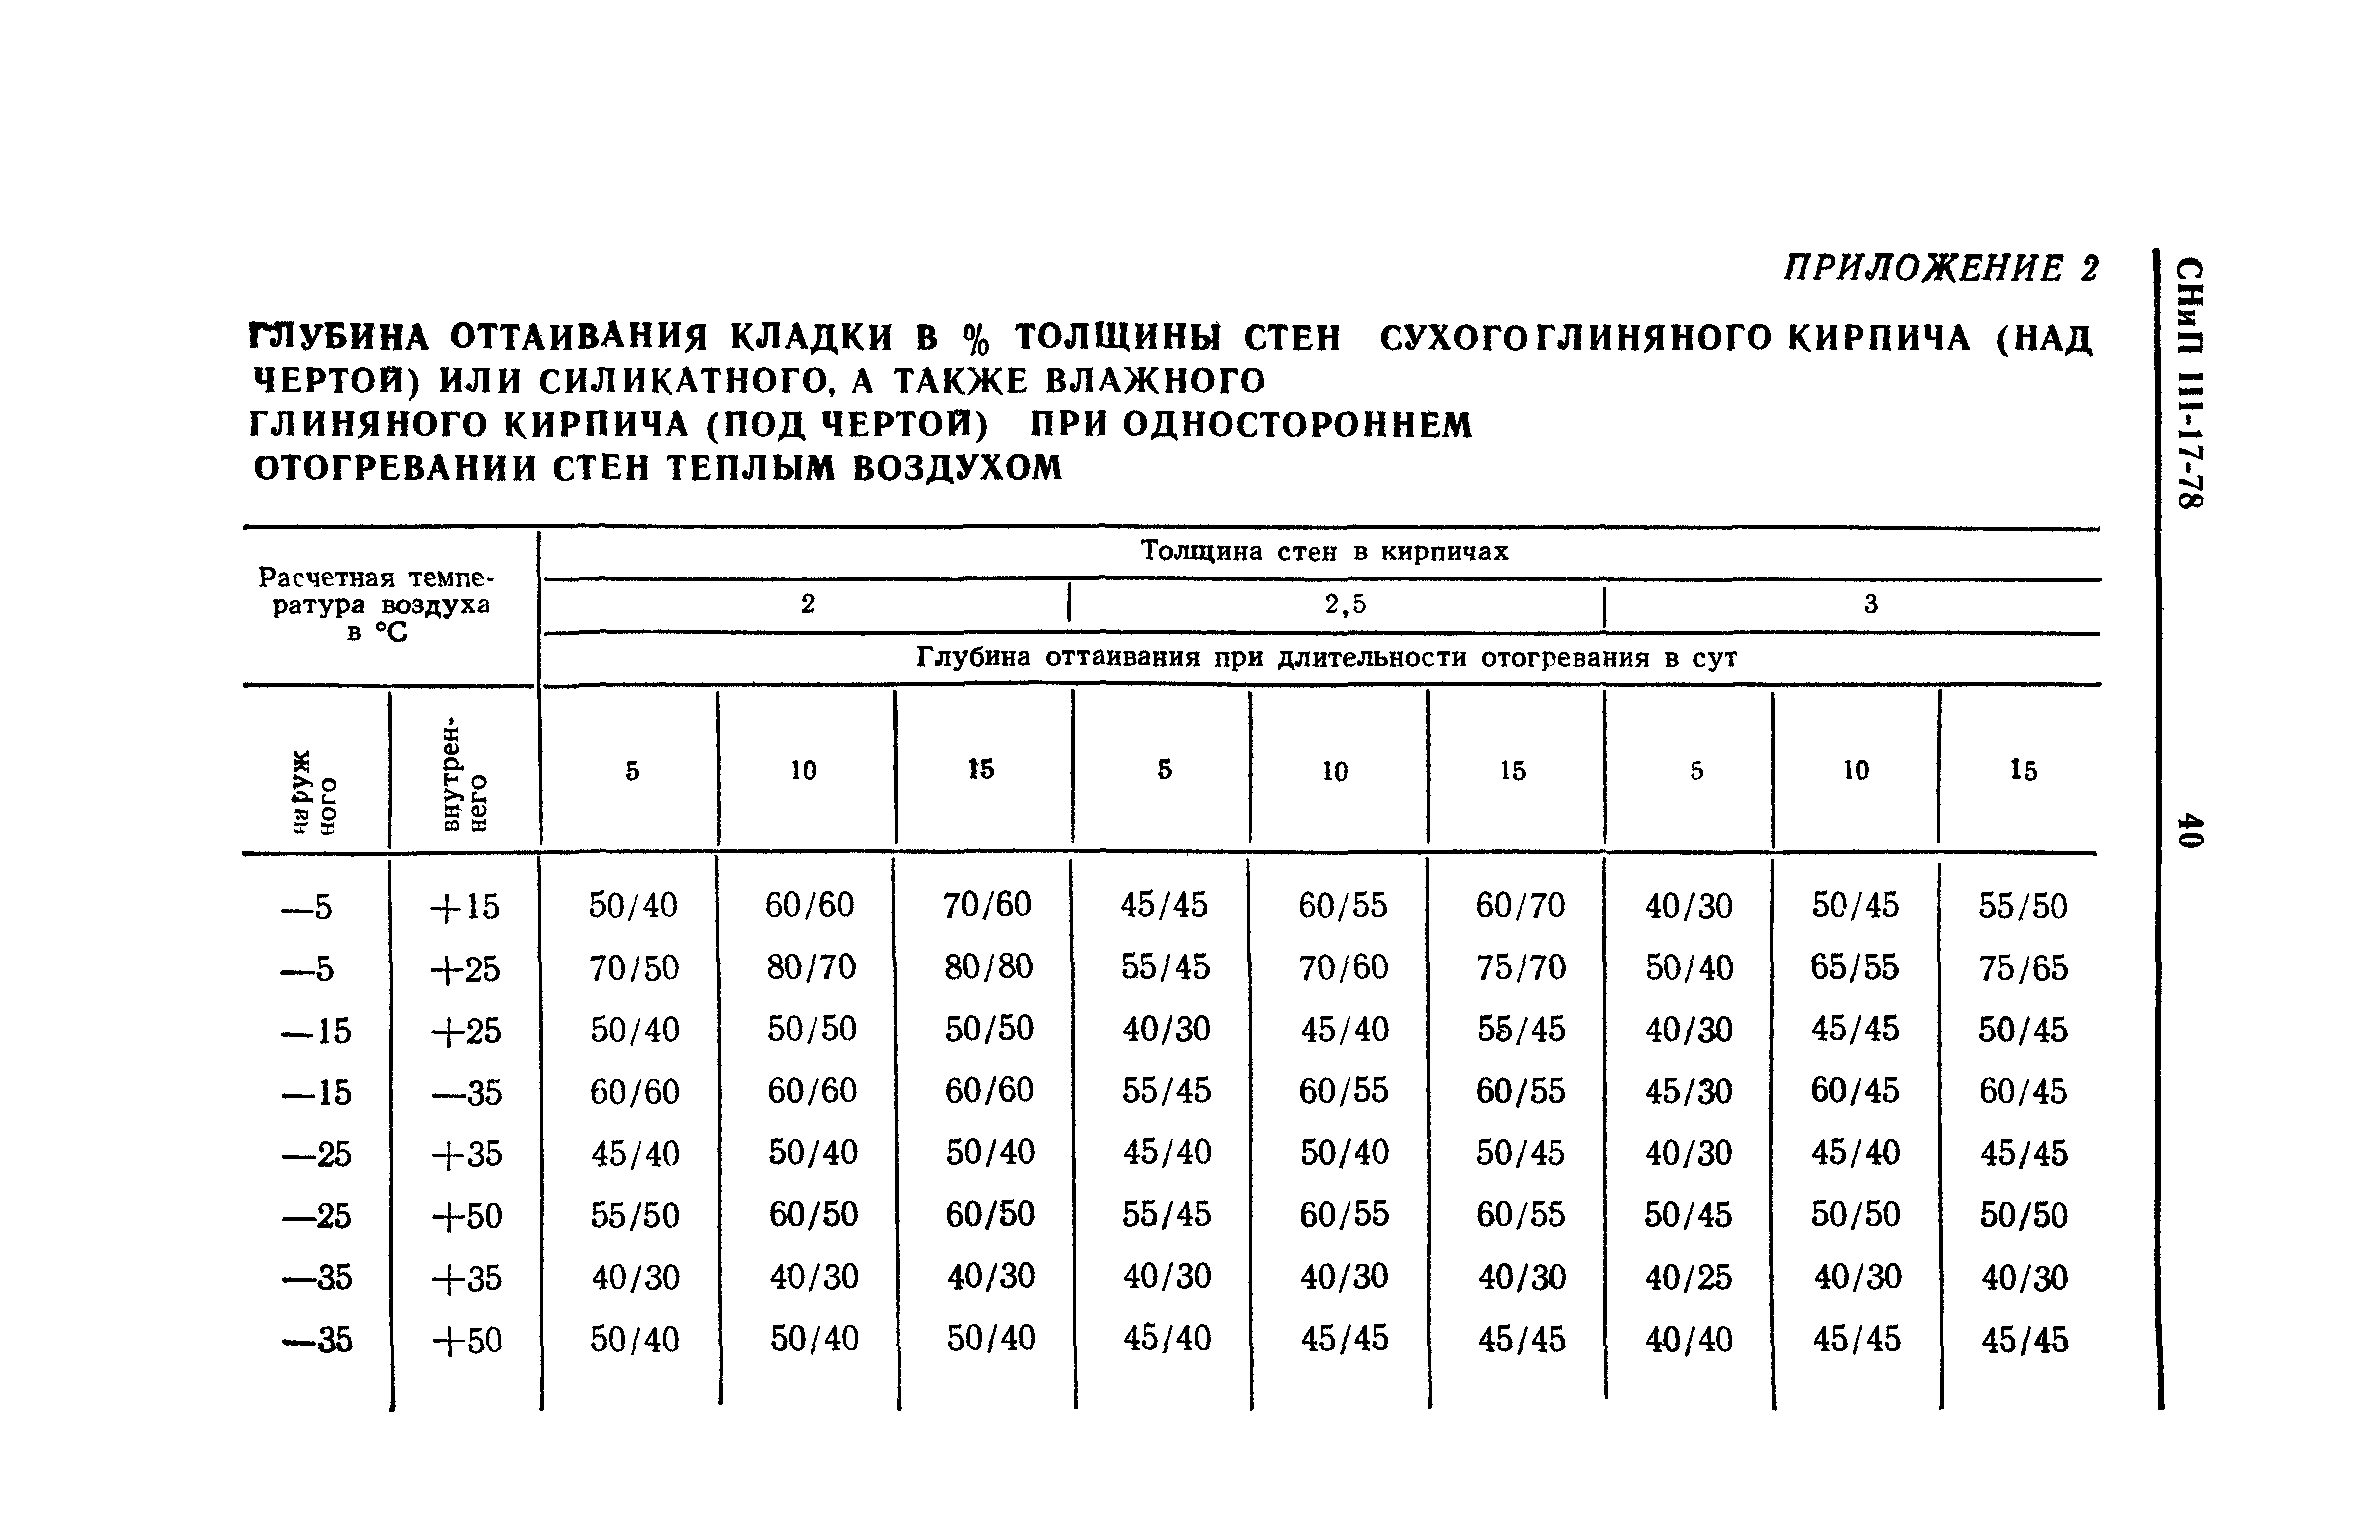 СНиП III-17-78